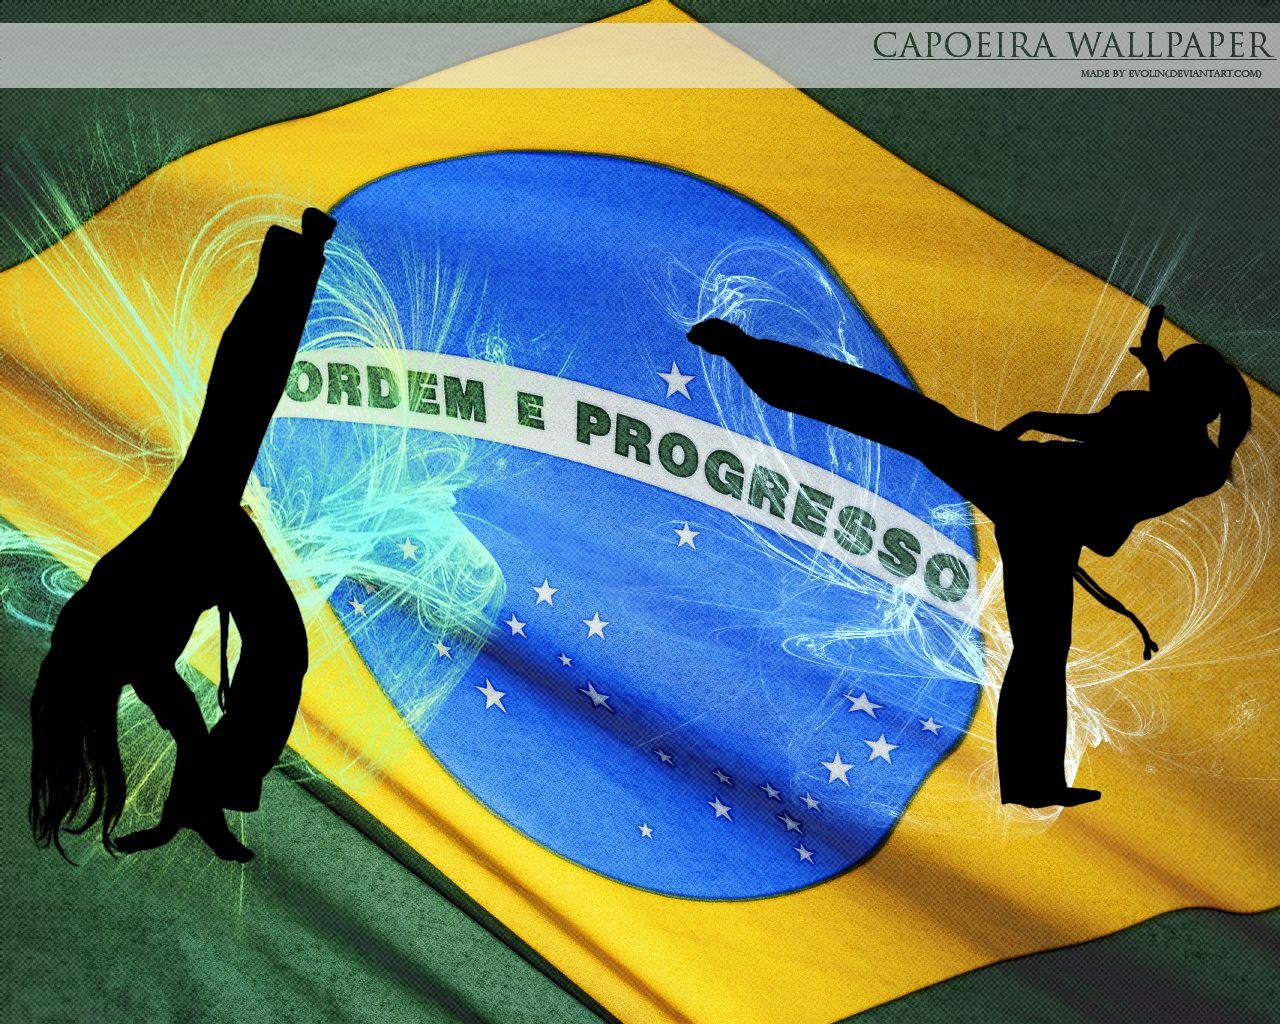 Capoeira walllpaper 2